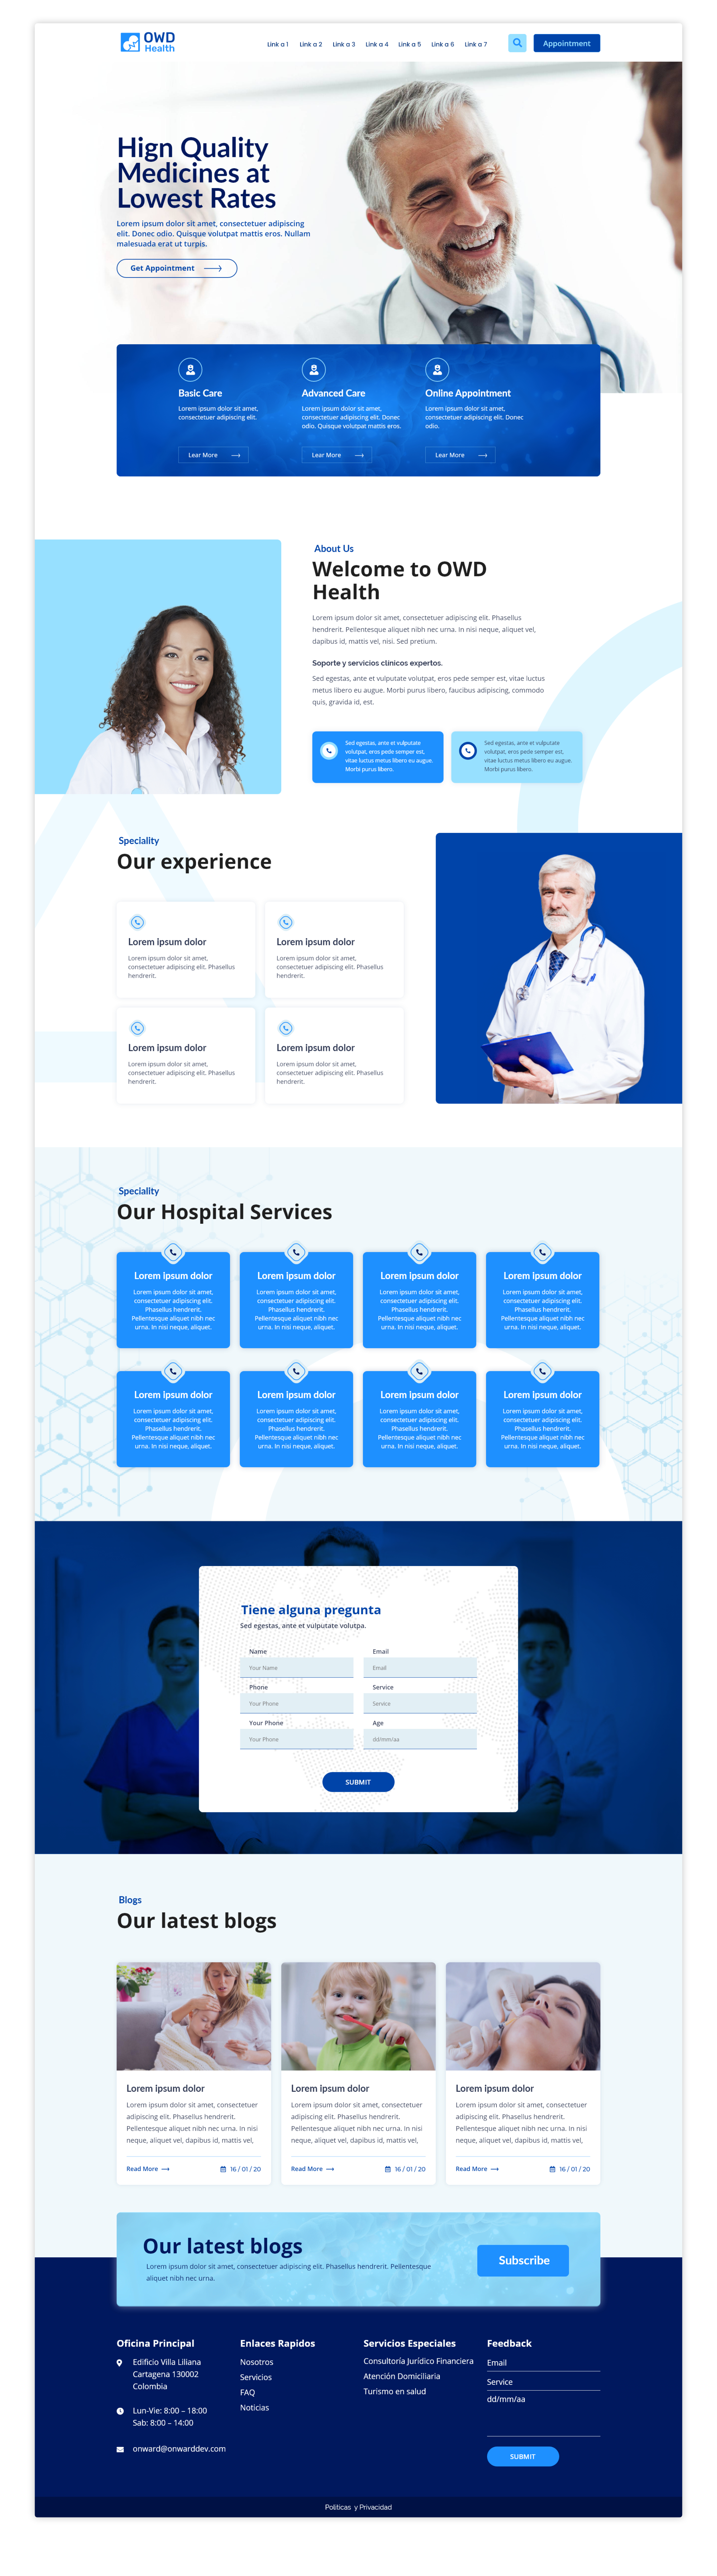 Health Care Prototipe and Web Design